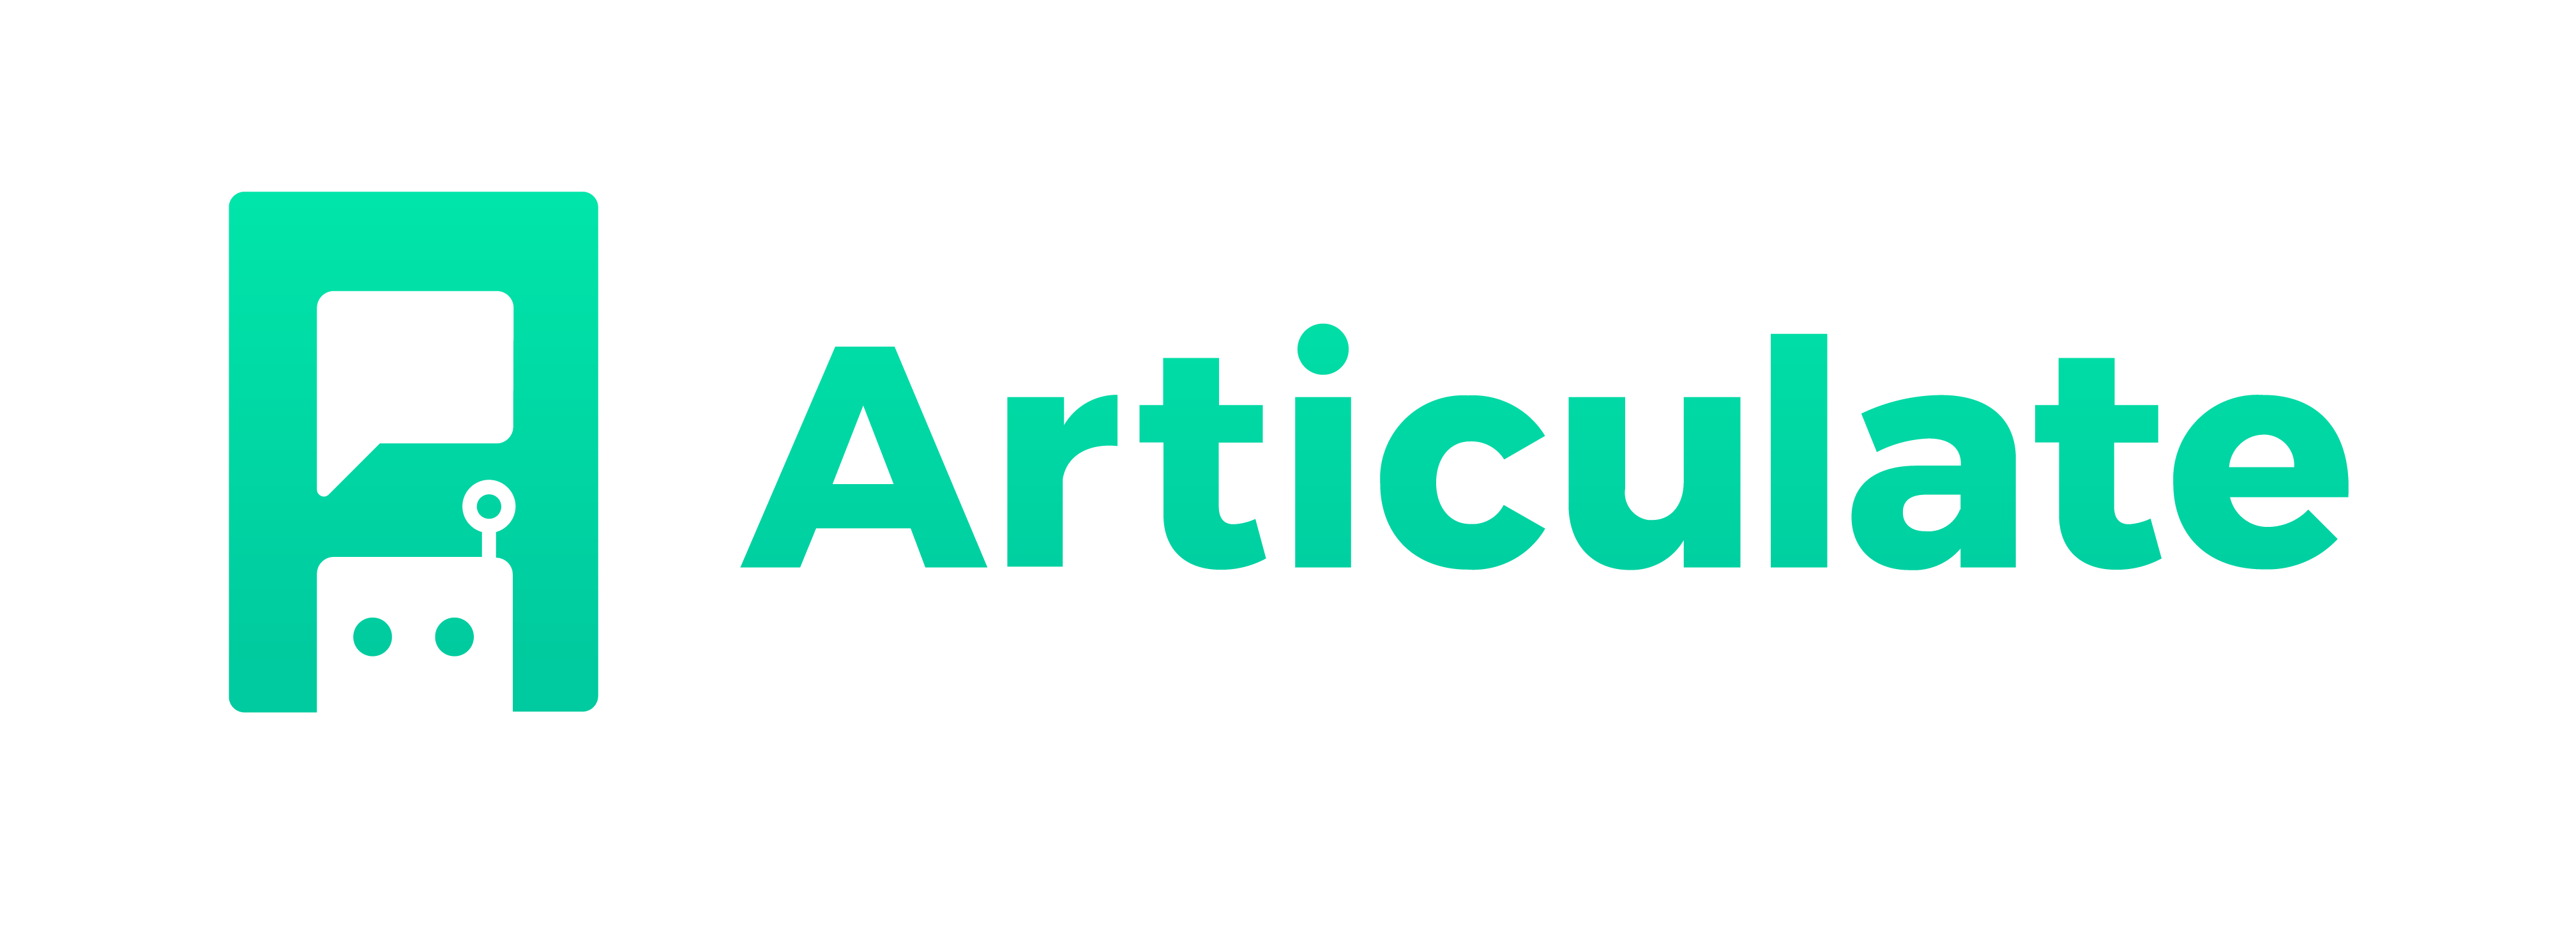 Articulate Logo - Introducing Articulate